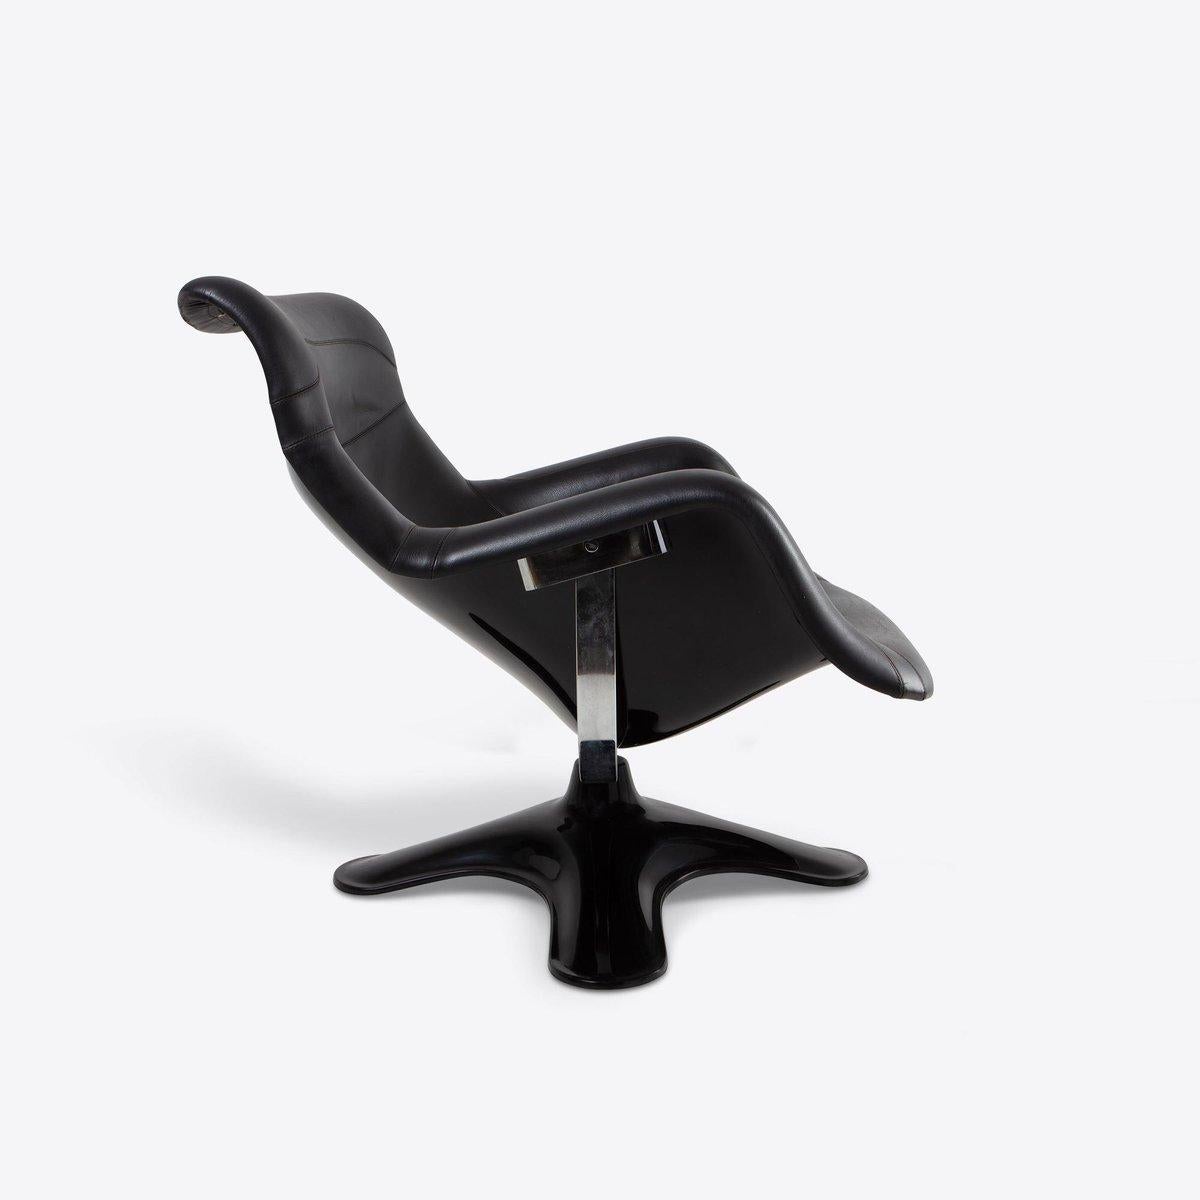 Der in Finnland hergestellte Stuhl besteht aus einer schwarz lackierten Fiberglasschale, einem Stahlgestell und einem mit Sörensen Prestige-Leder gepolsterten Sitz in Schwarz mit PU-Schaumstoffpolsterung. 

Der stilvolle und außergewöhnlich